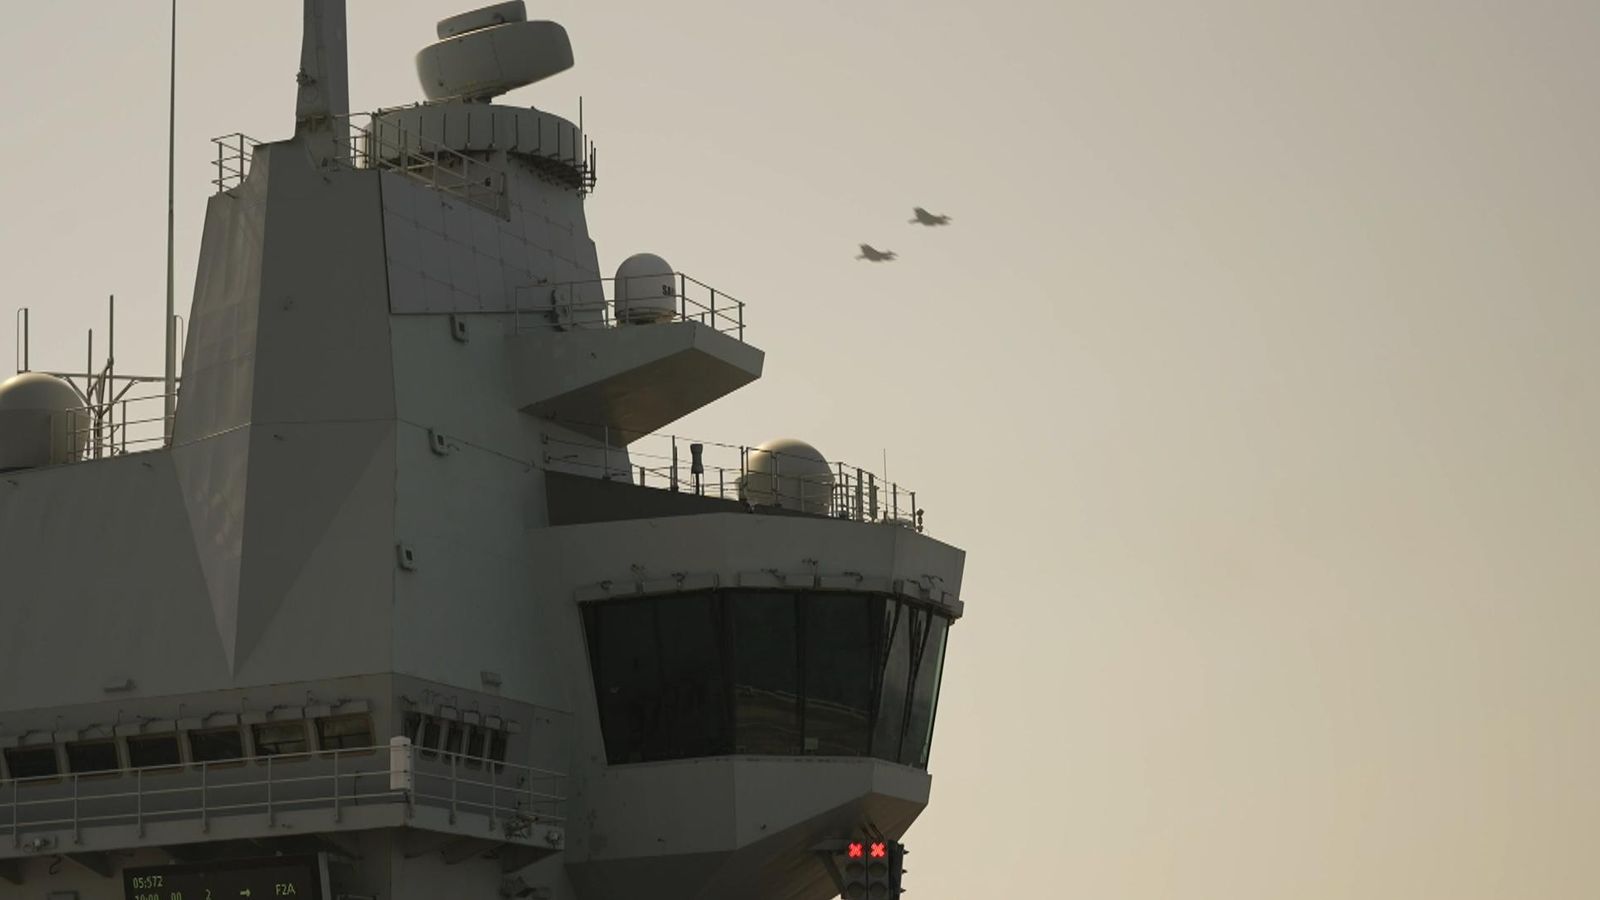 Inggris melacak kapal selam China dan siap mencegat jet di Laut China Selatan, ungkap petugas |  Berita Dunia